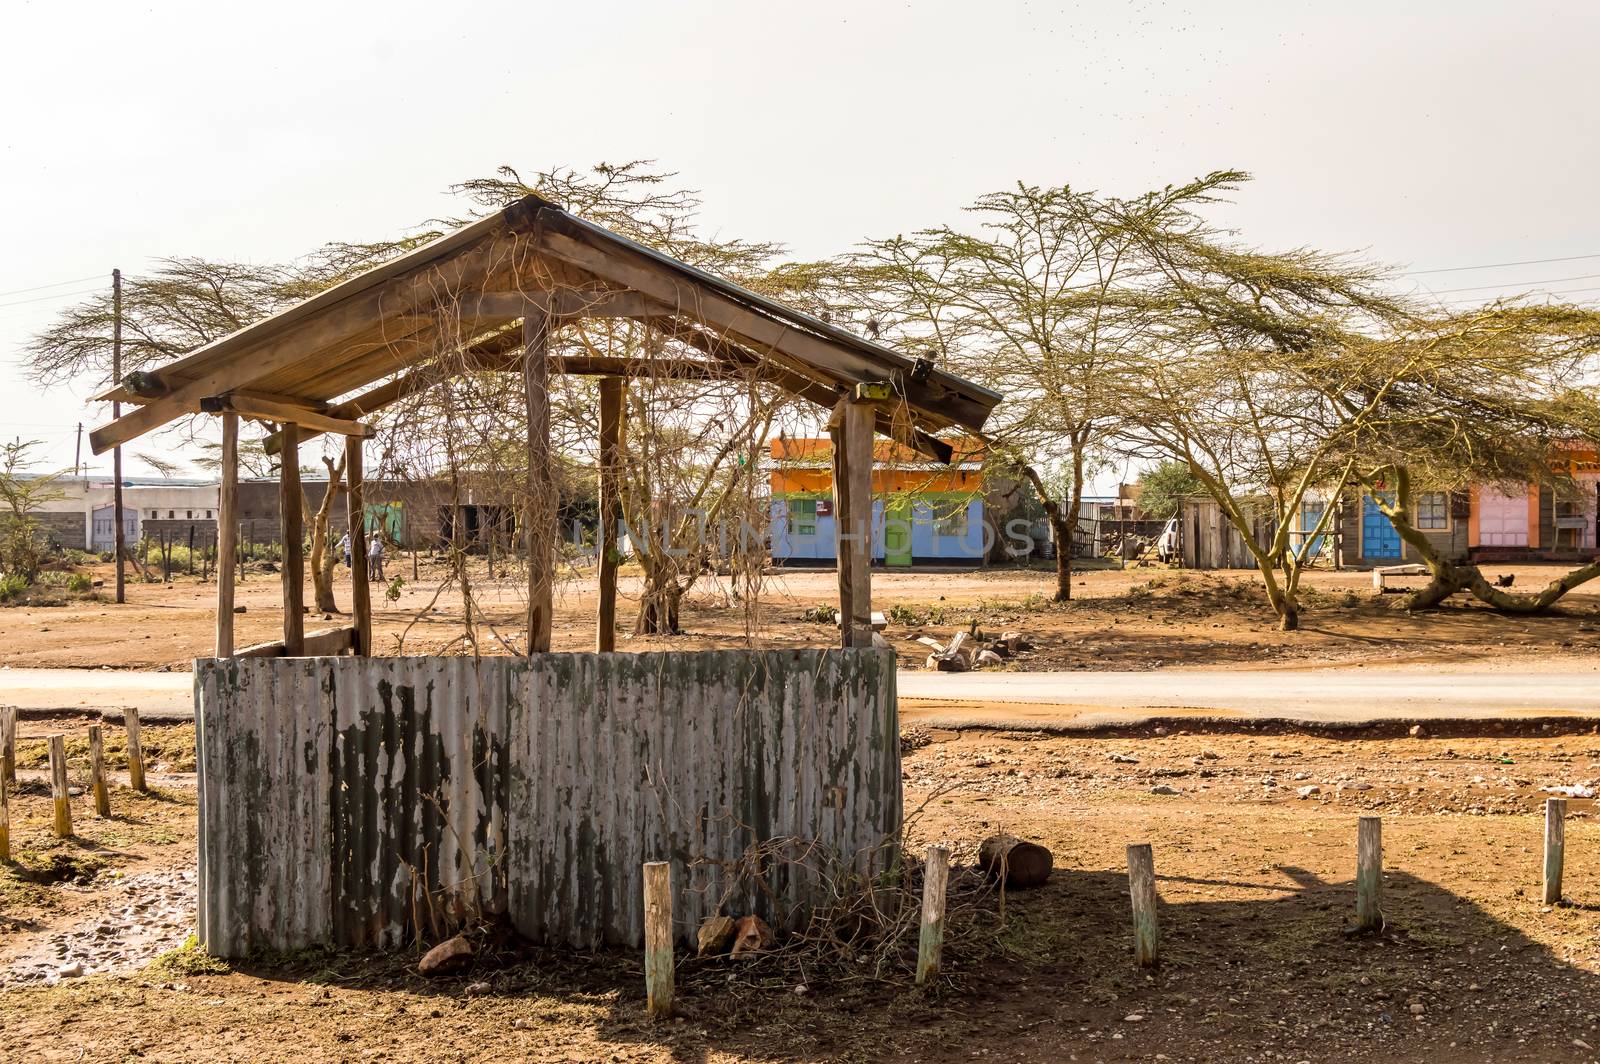 Small customs hut made of scrap metal and wood Kenya, Africa